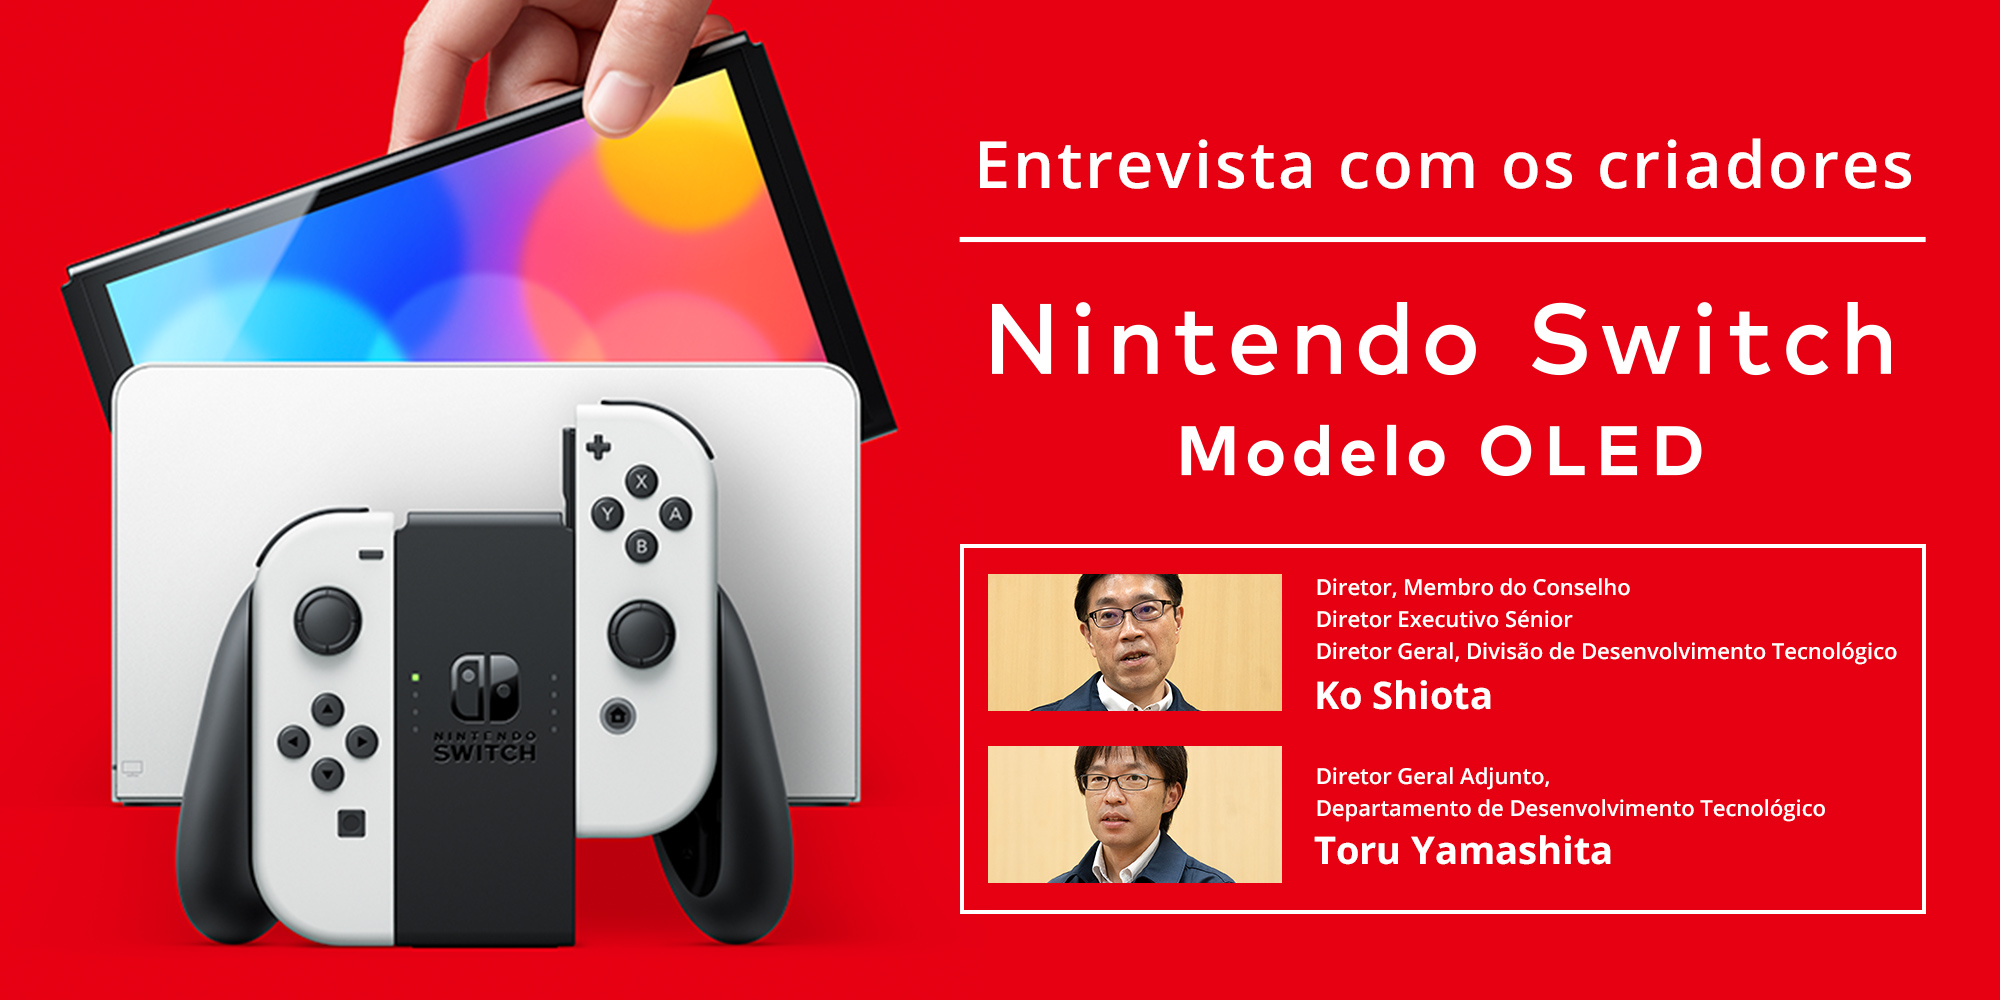 Entrevista com os criadores – parte 2: Nintendo Switch – Modelo OLED